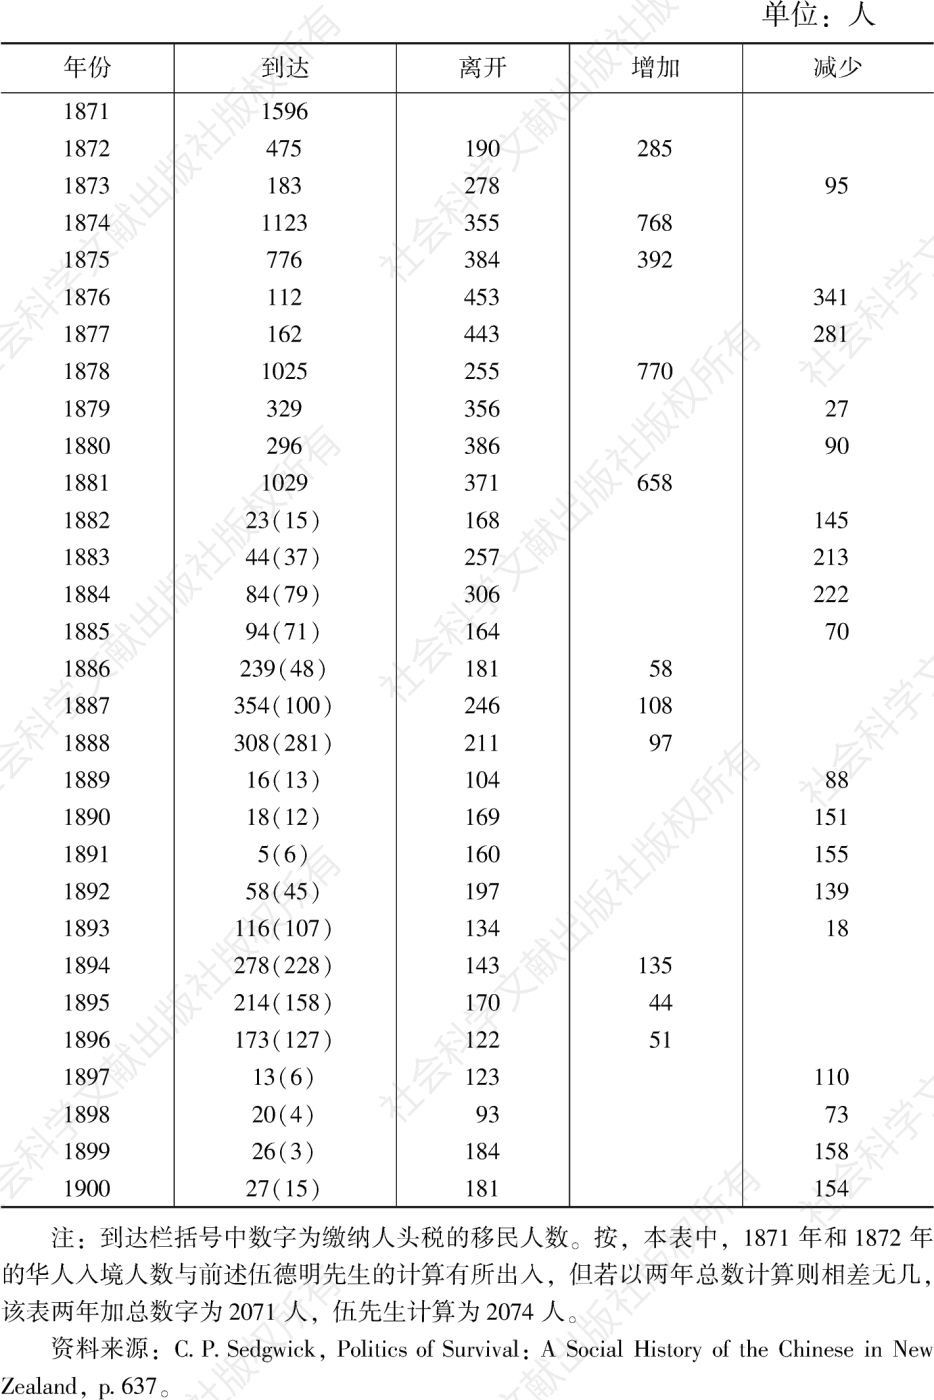 表1-3 中国人入境及离境统计（1871—1900）